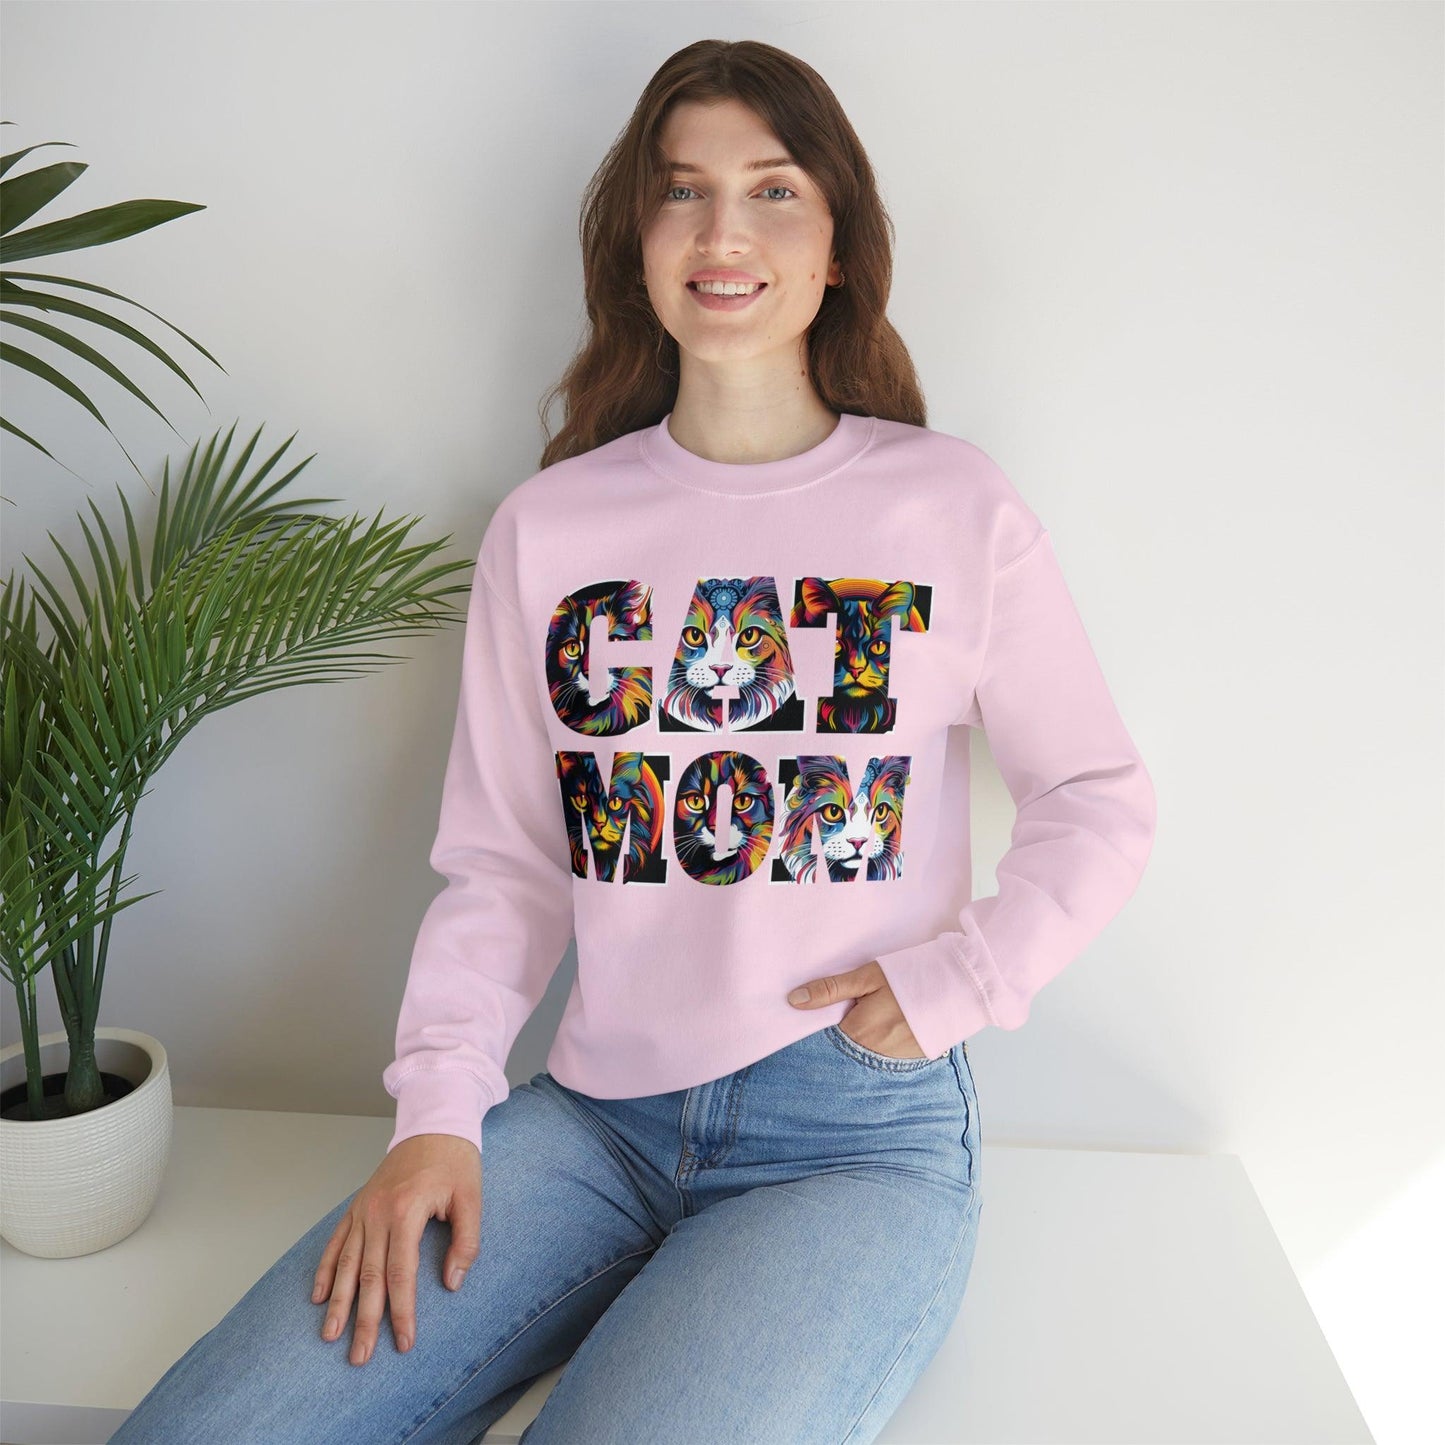 Vintage Cat Sweatshirt Cat Mom Sweatshirt Cat Crewneck Sweatshirt Cat Mom Gift Cat Lover Gift Animal Lover Cat Mama Shirt Cat Lover Sweater